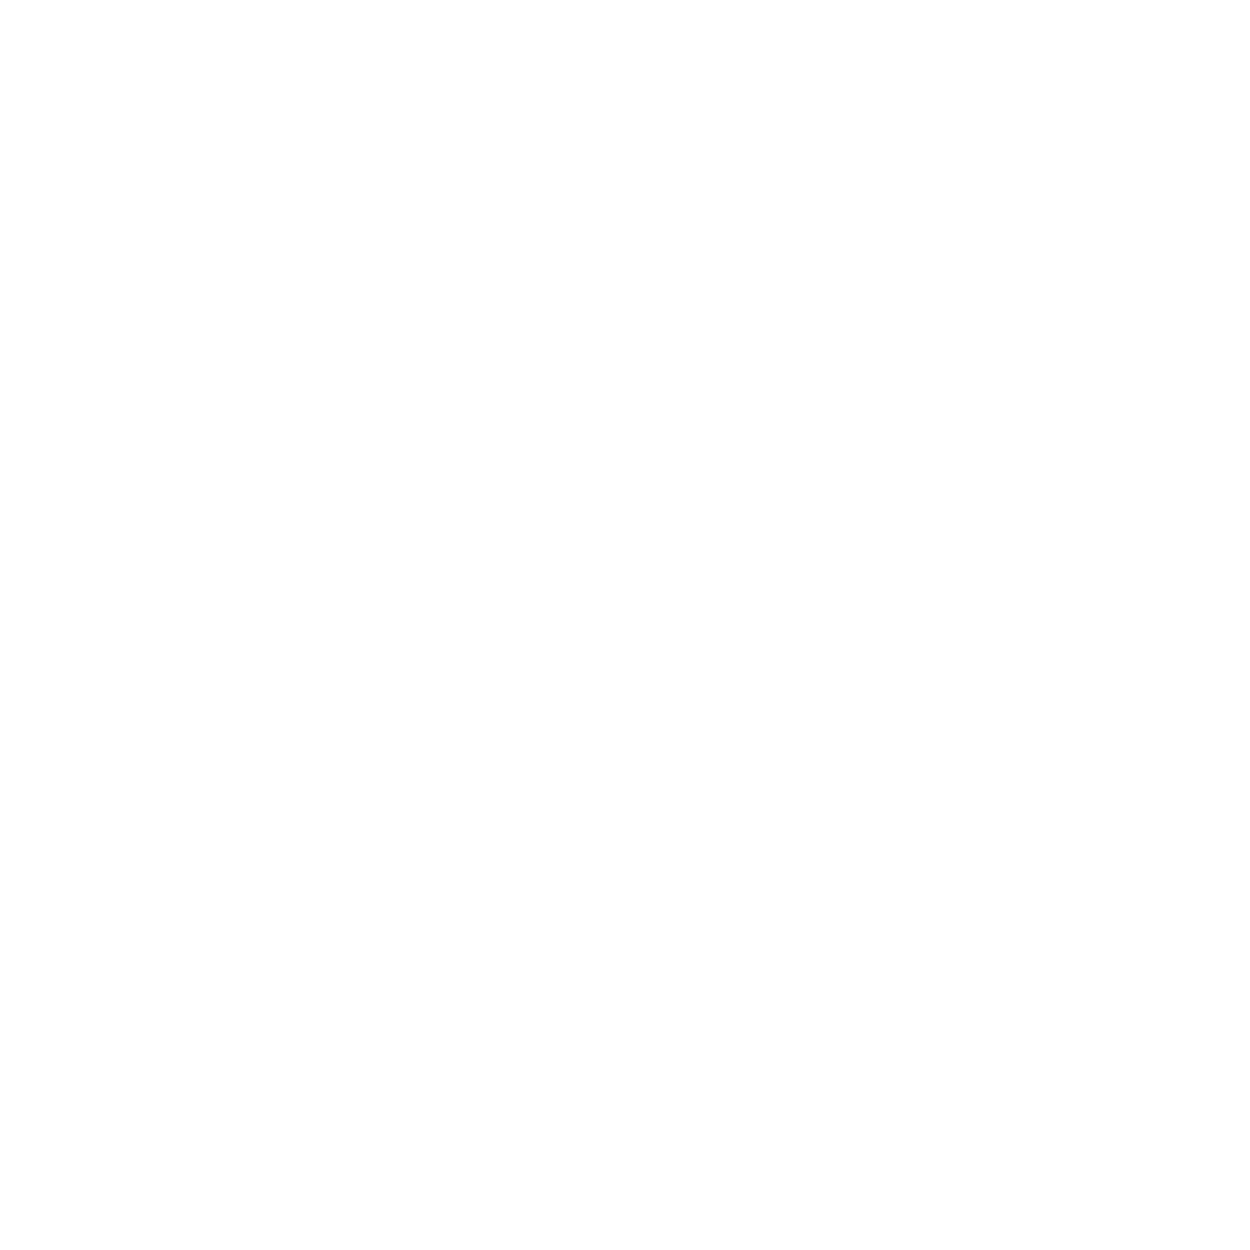 icons8-plane-1250-white